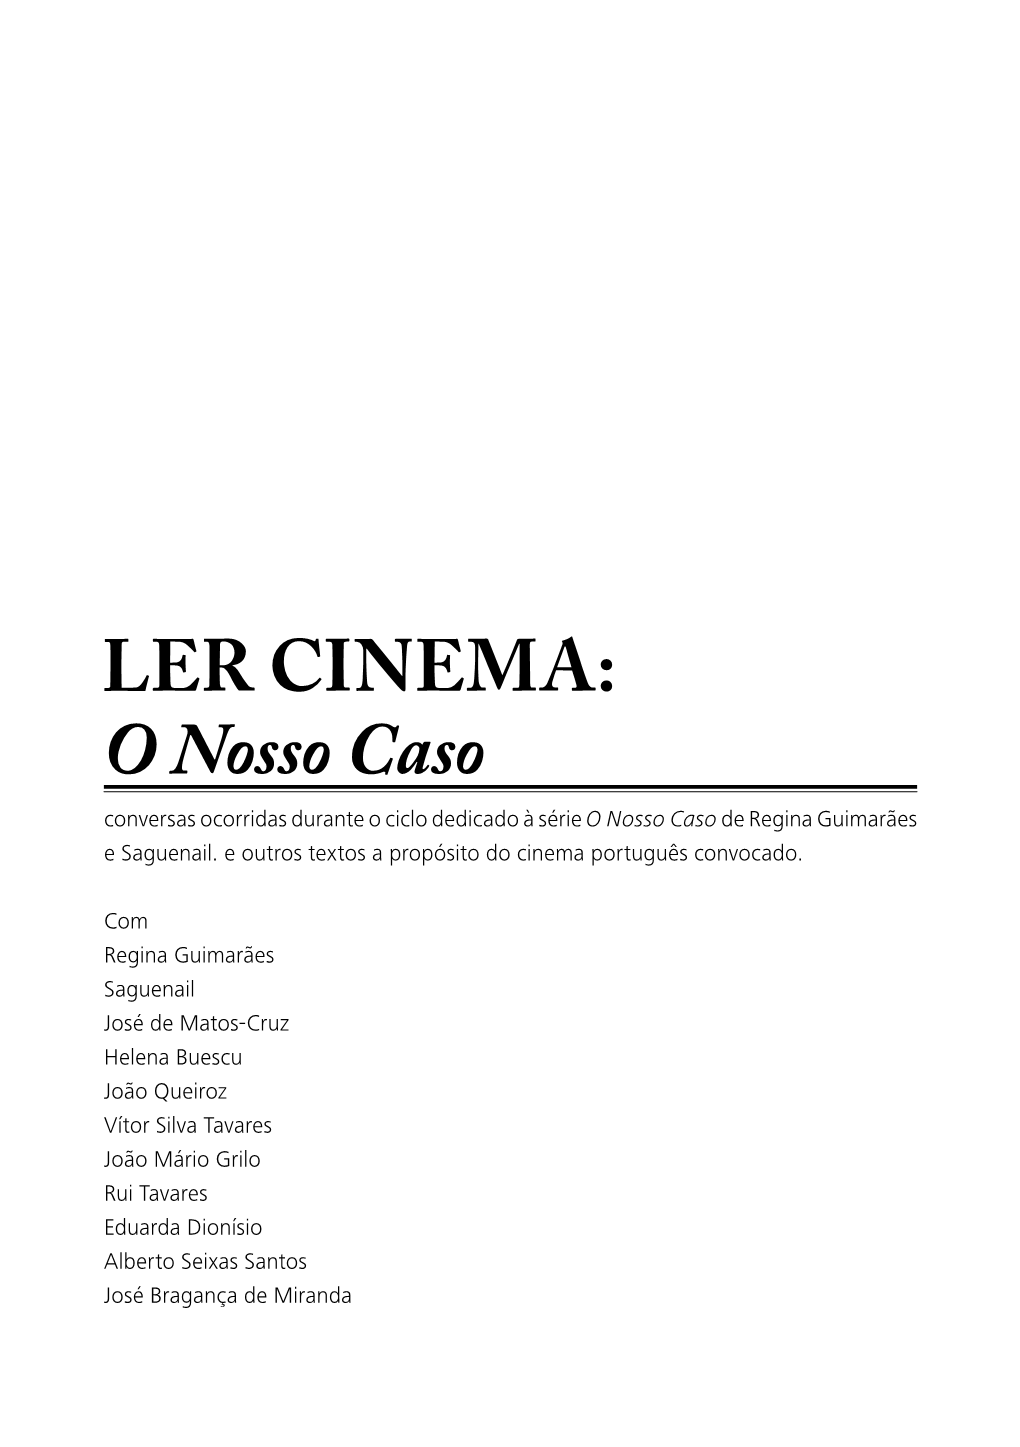 Ler Cinema: O Nosso Caso Decorreu Na Videoteca Municipal De Lisboa De ÍNDICE Janeiro a Junho De 2006